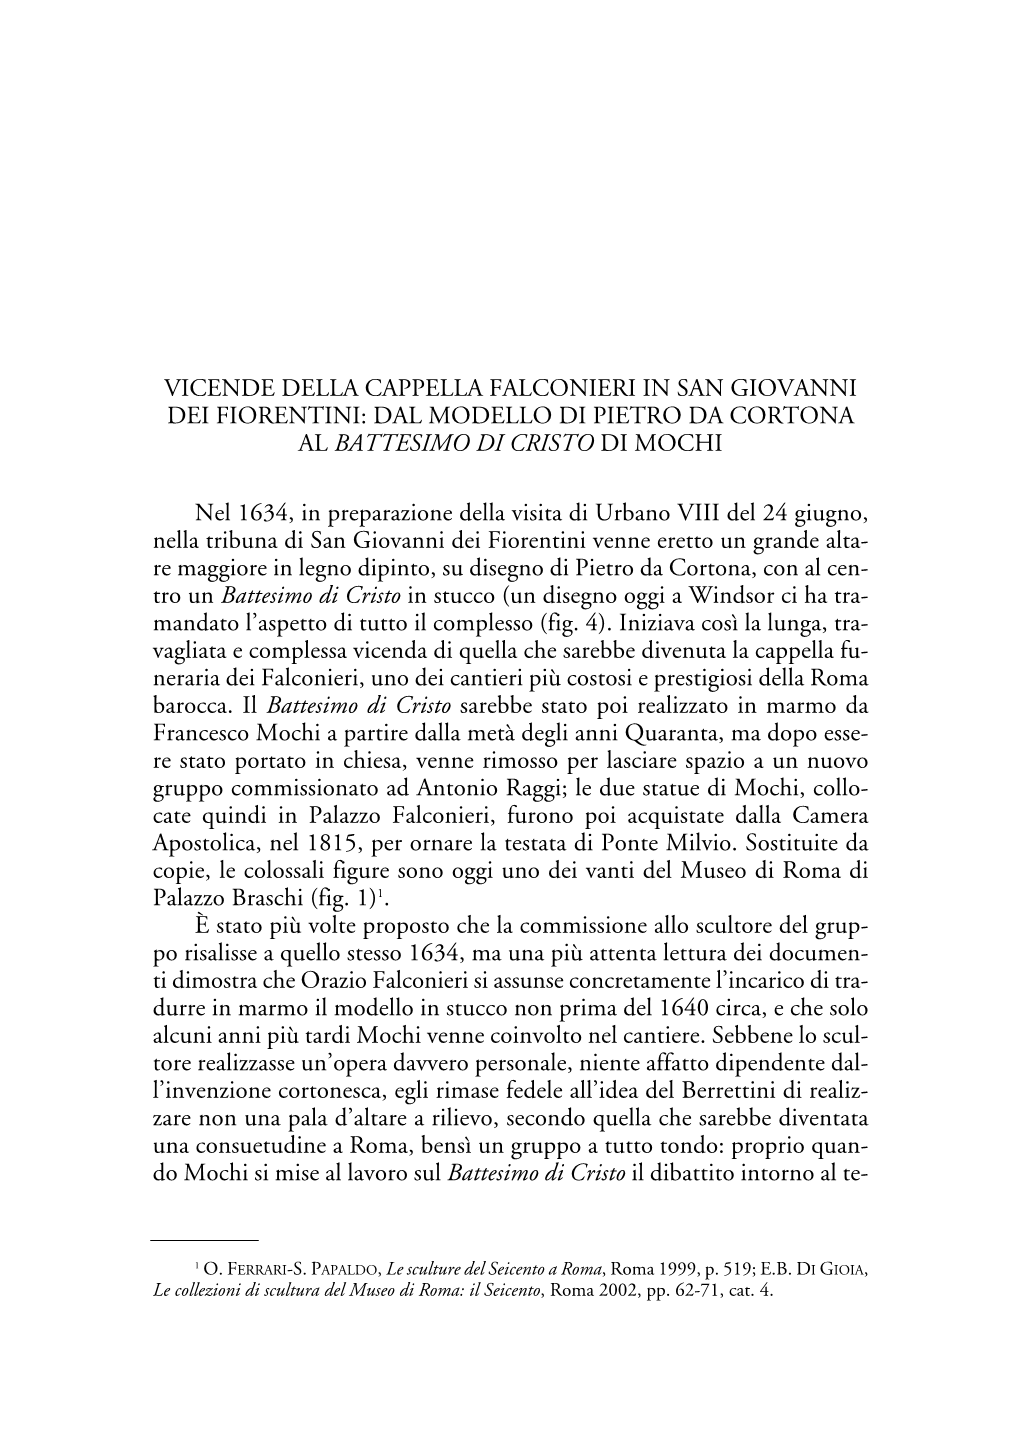 Vicende Della Cappella Falconieri in San Giovanni Dei Fiorentini: Dal Modello Di Pietro Da Cortona Al Battesimo Di Cristo Di Mochi